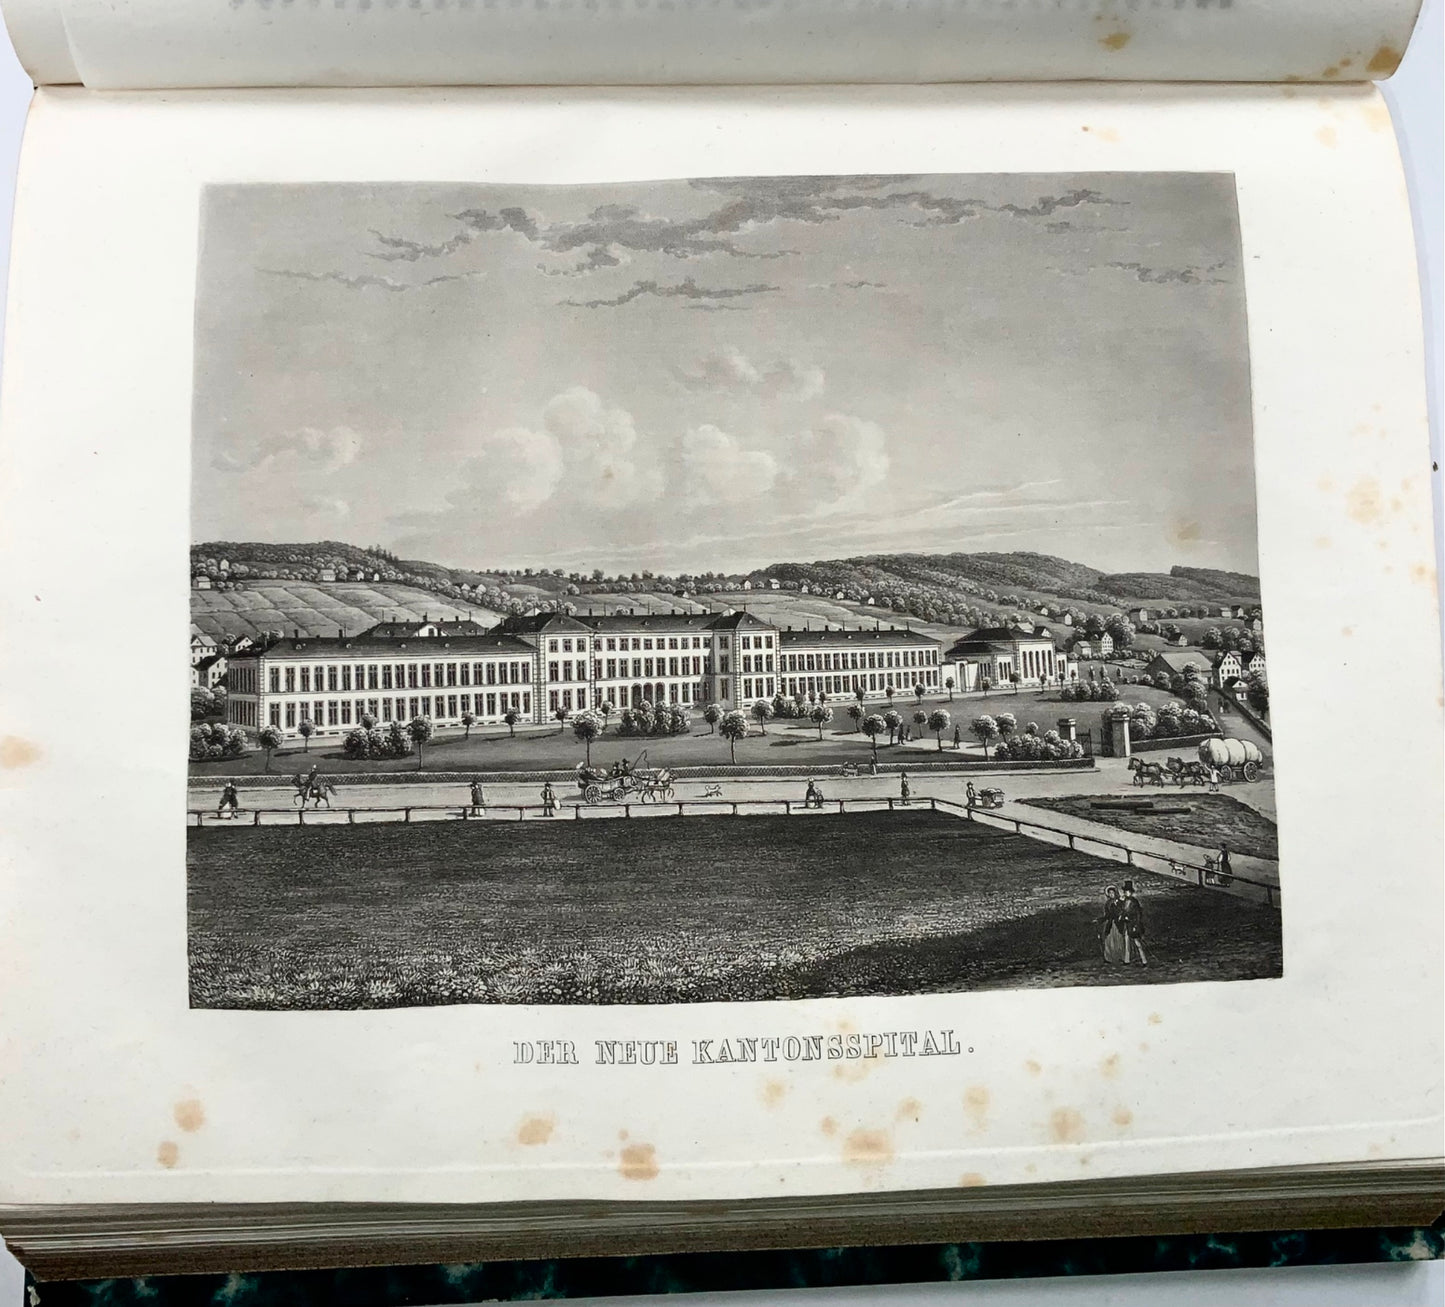 1853 Chronique du canton de Zurich, Suisse, superbes aquatintes, 1840-50